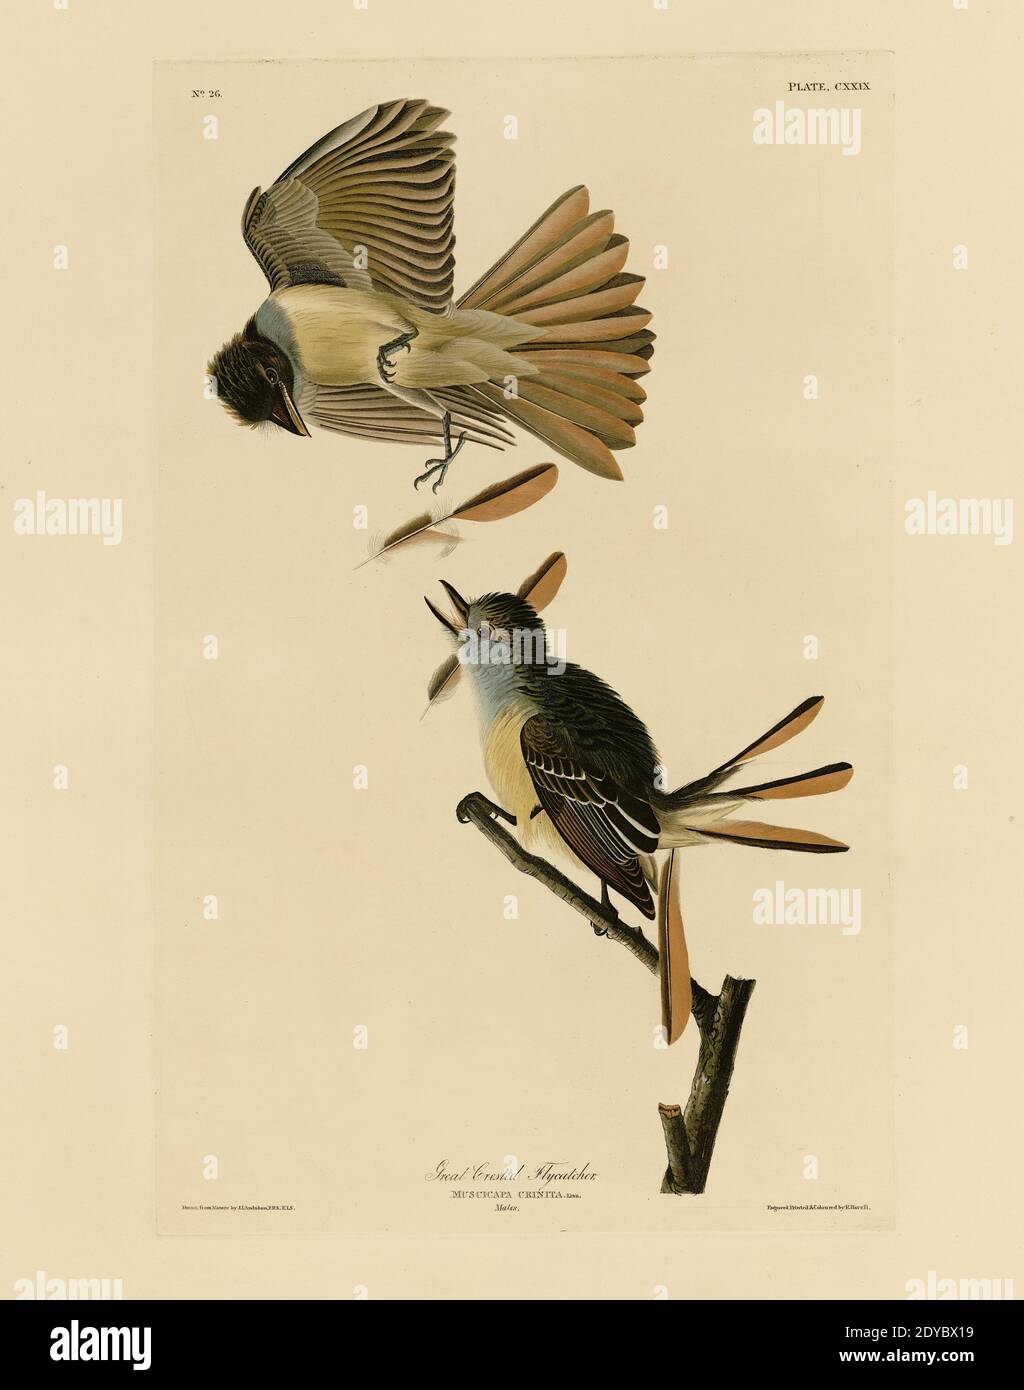 Plate 129 Great Crested Flycatcher, from the Birds of America folio (1827–1839) di John James Audubon - immagine modificata di altissima risoluzione e qualità Foto Stock